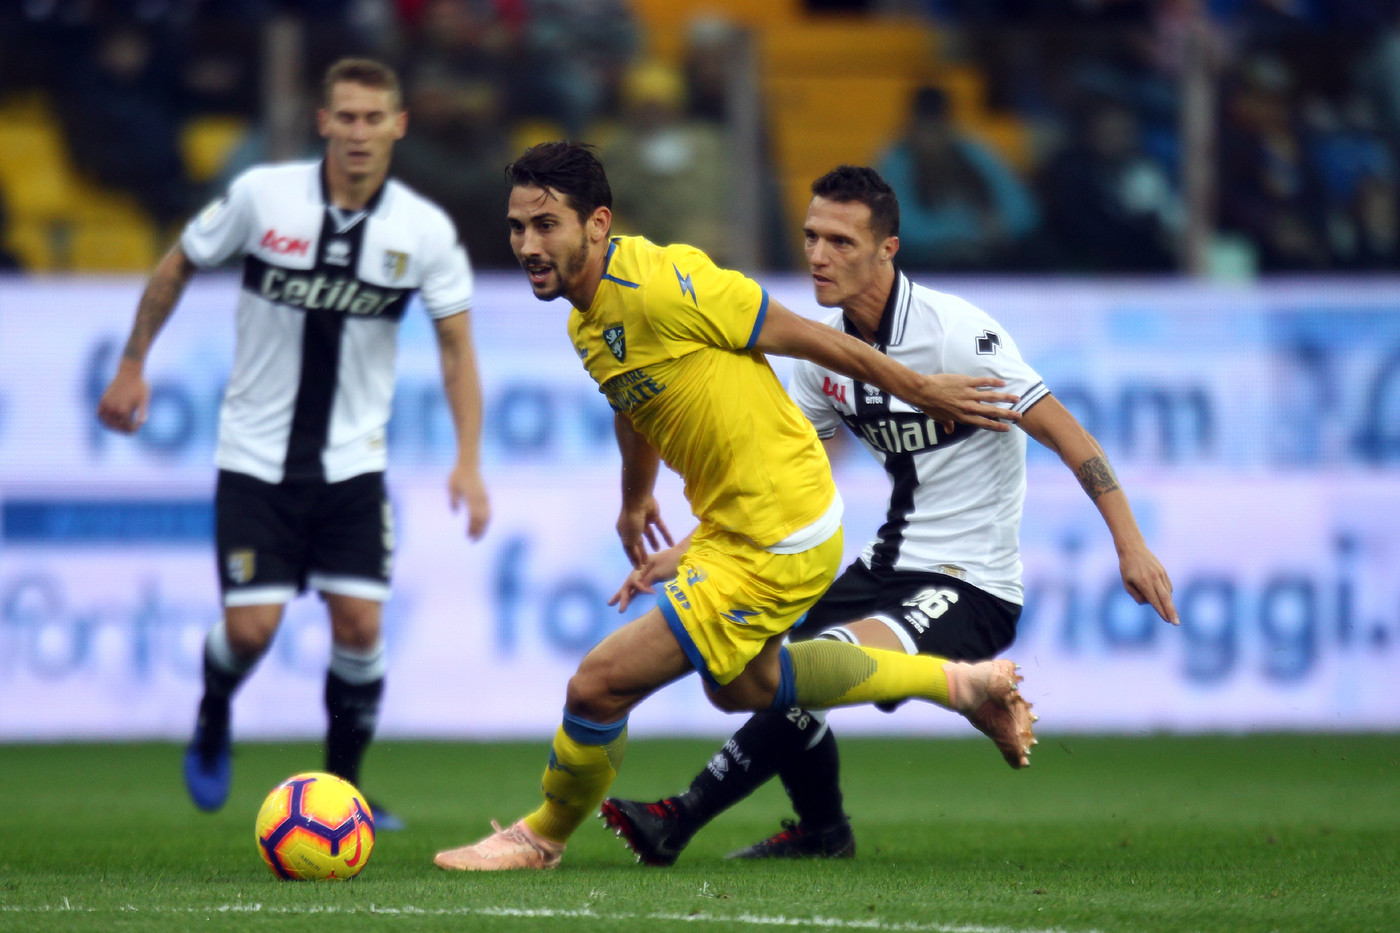 Serie A, Parma-Frosinone 0-0 | Il fotoracconto